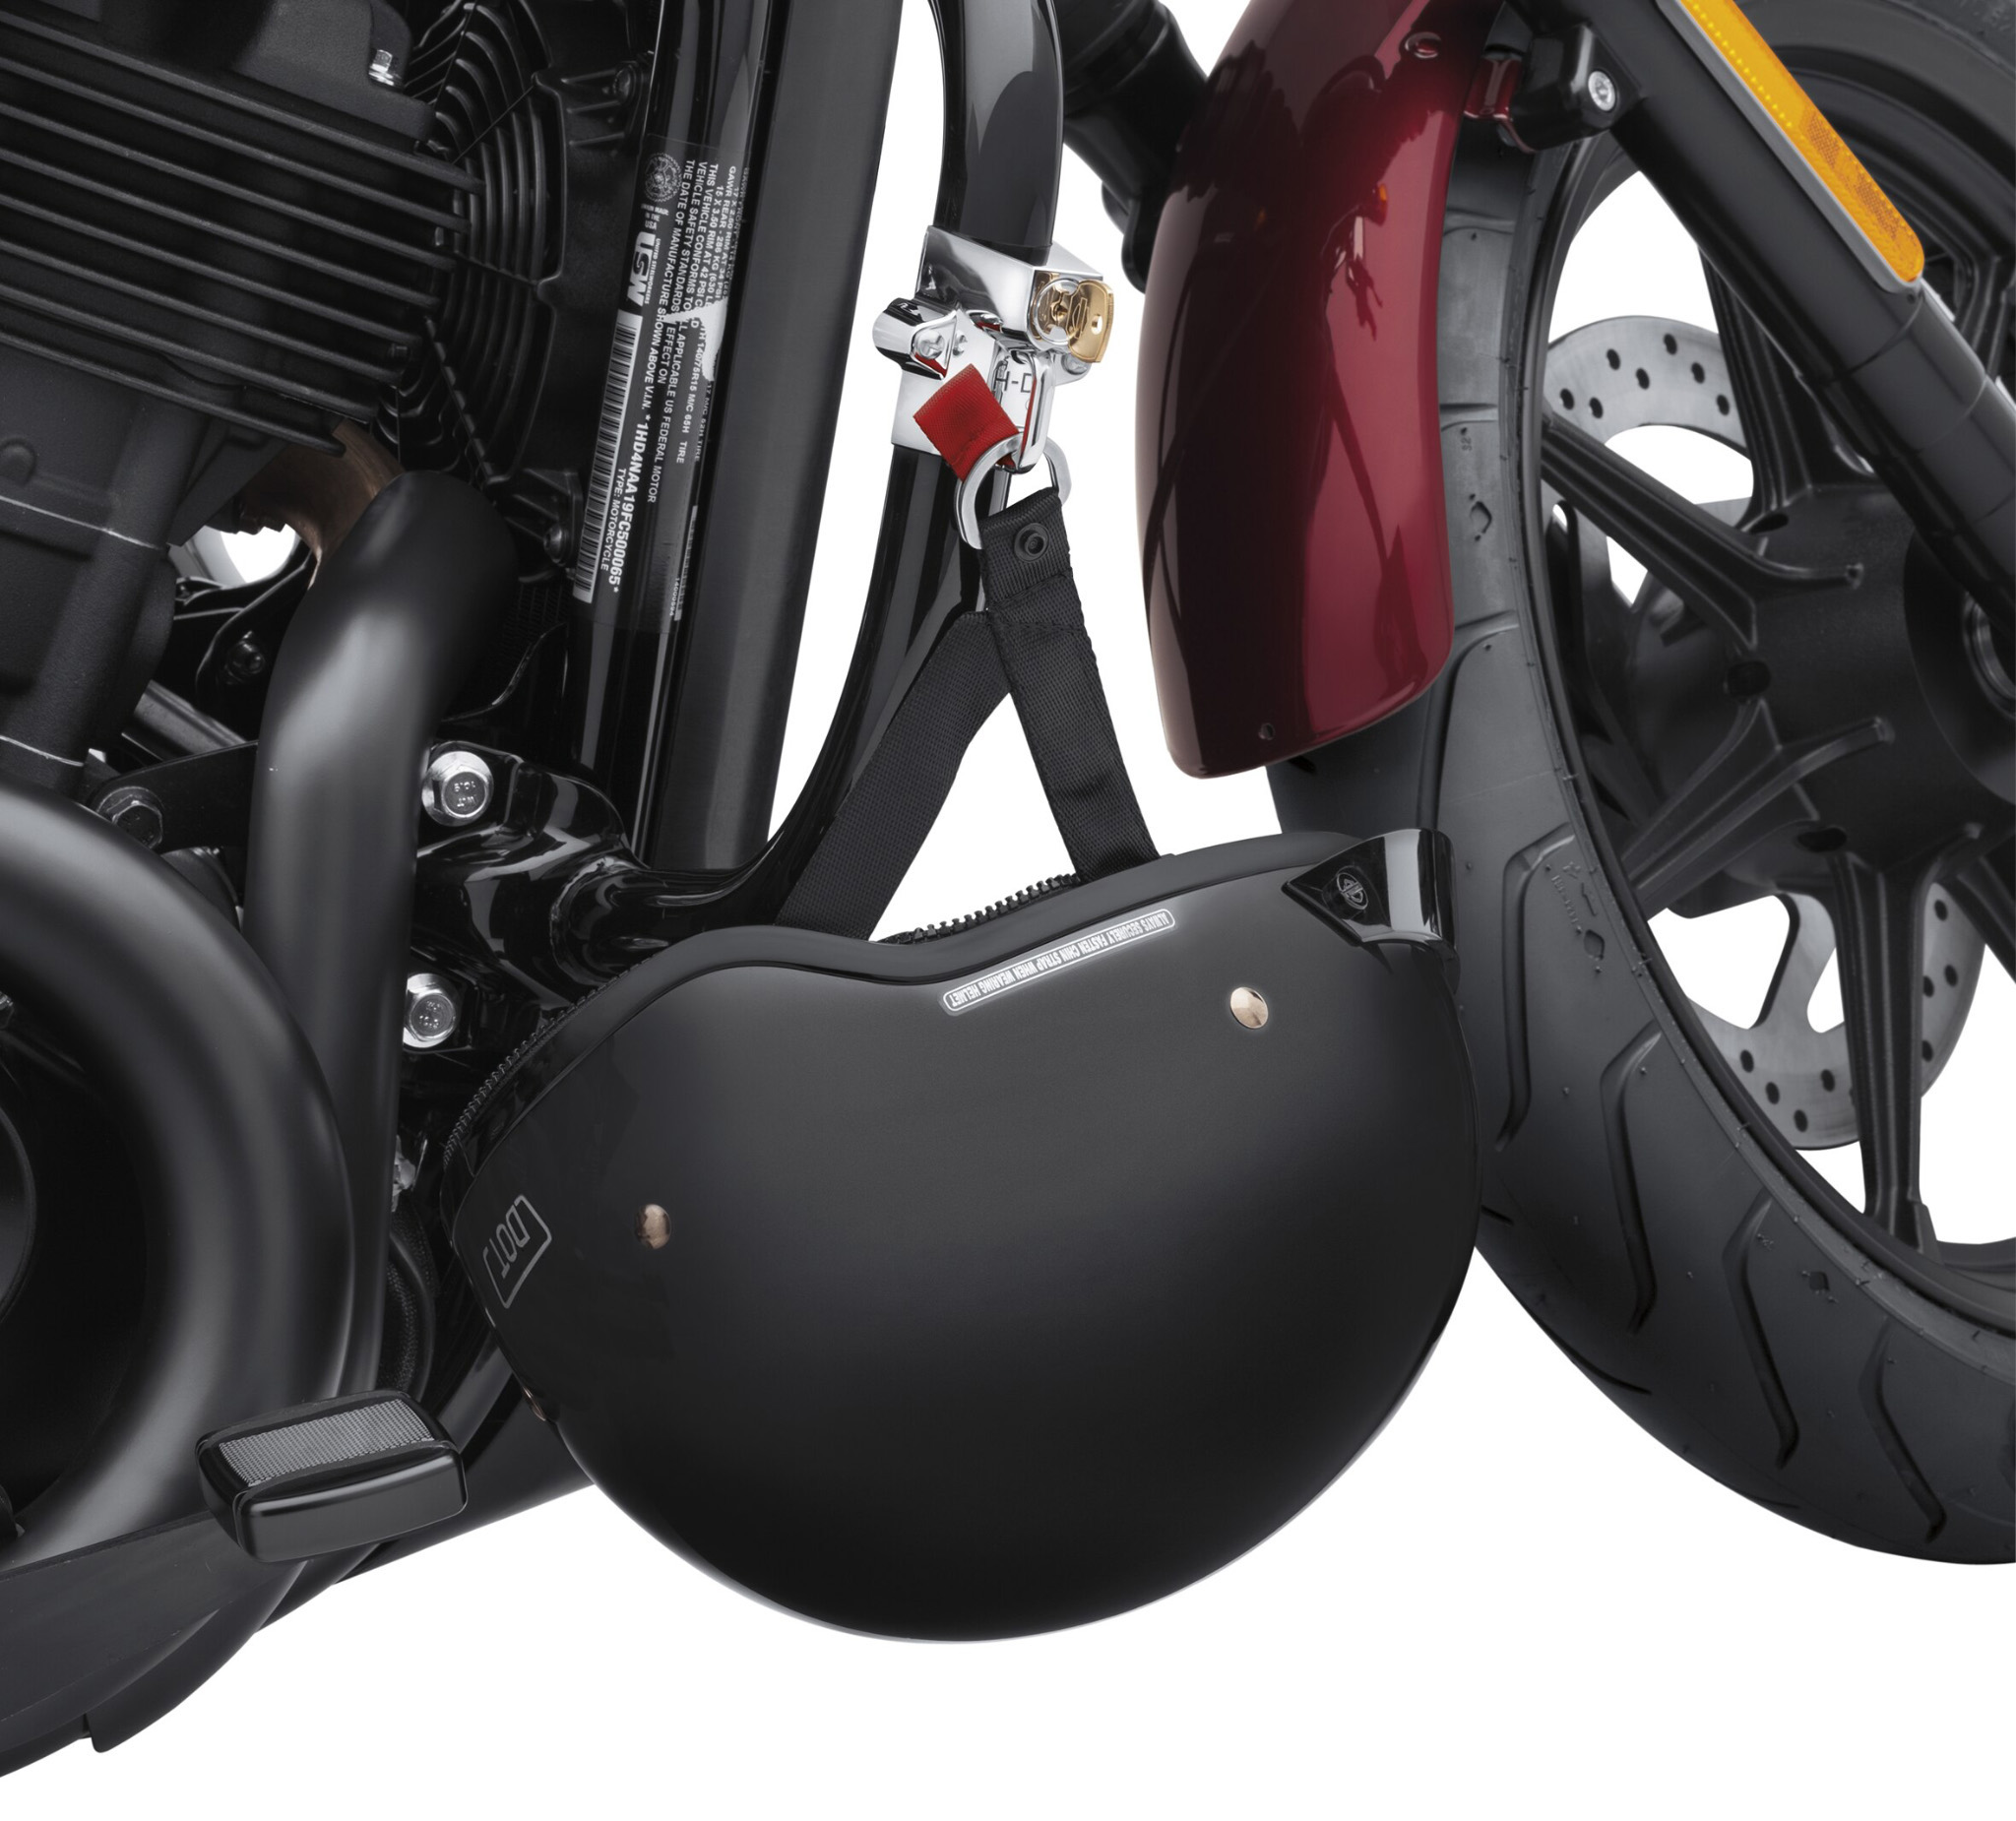 helmet lock motorcycle